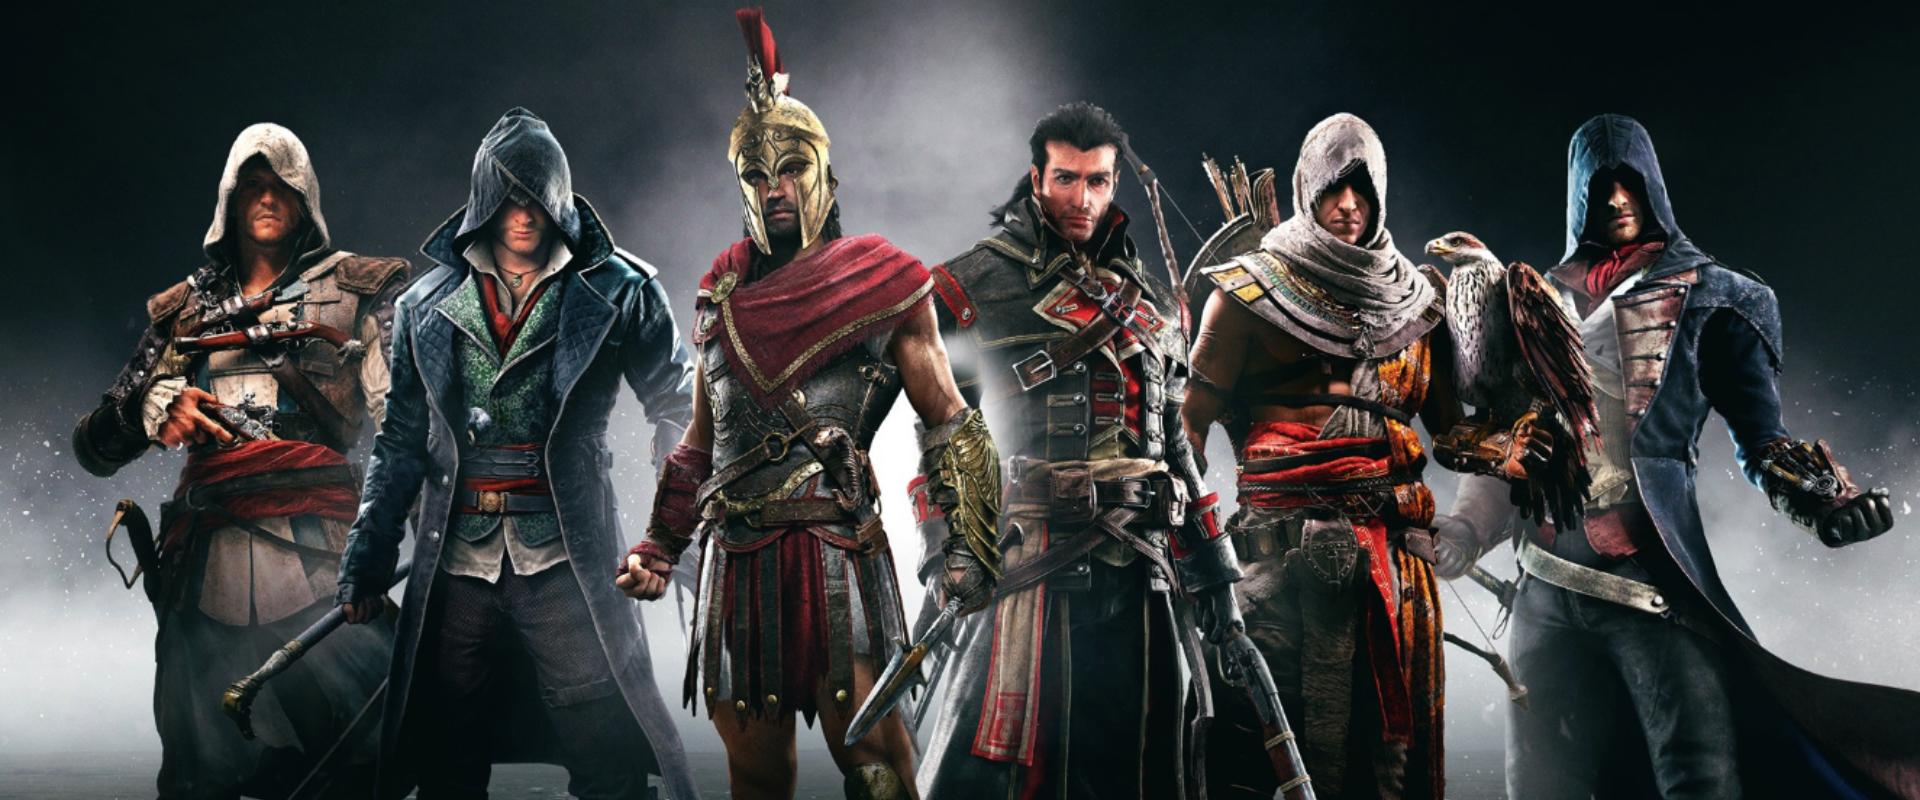 Eddig soha nem látott felvételeken a legjobb Assassin's Creed játékok